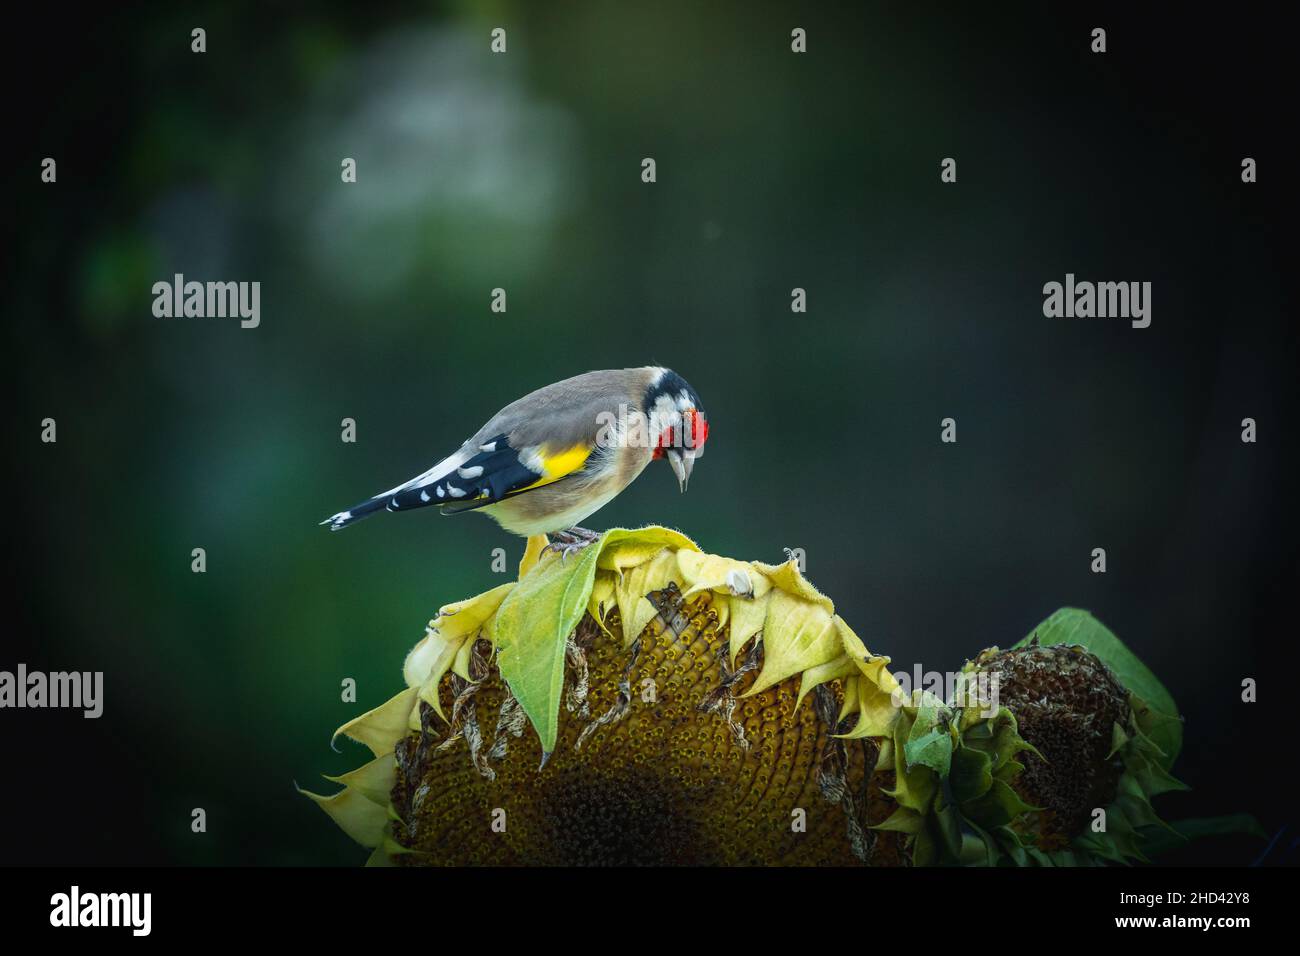 Fotos vom Stieglitz oder Ausch Distelfink genannt im Garten auf Futtersuche an Sonnenblumen.Porträt vom Stieglitz (Distelfink) im Herbst. Banque D'Images